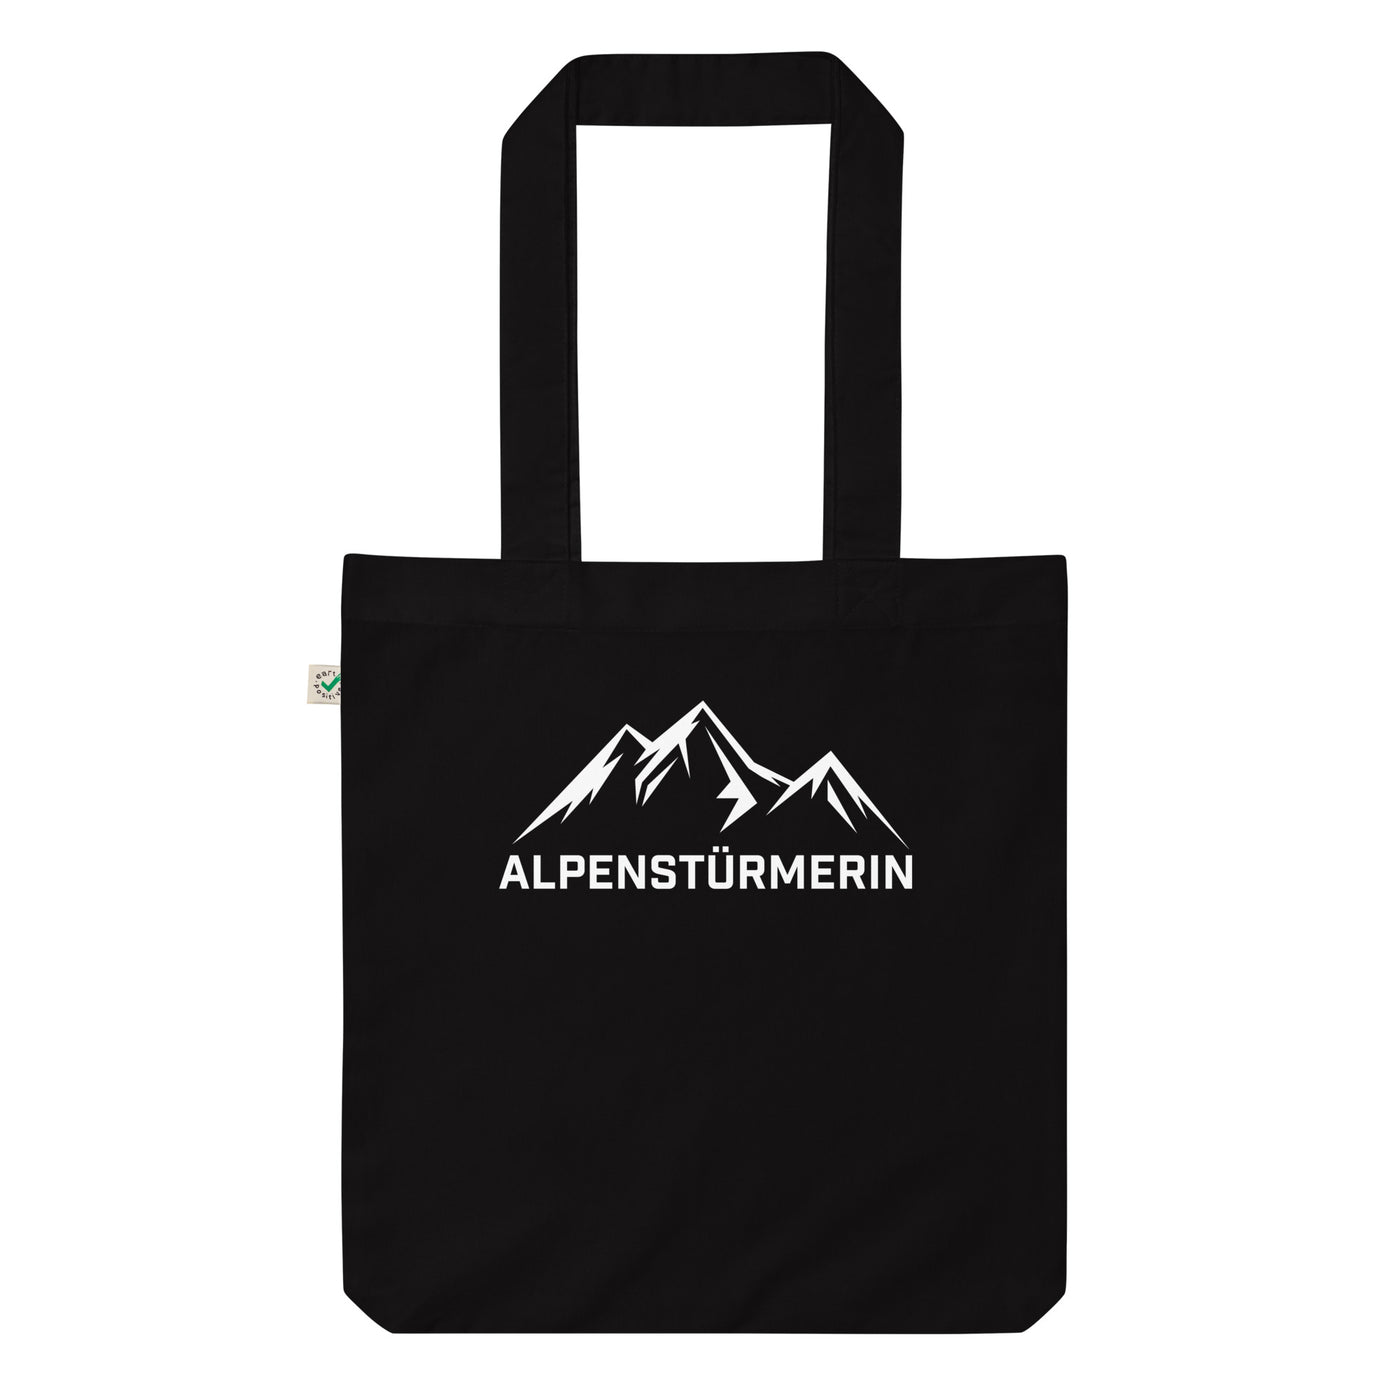 Alpenstürmerin - Organic Einkaufstasche berge wandern Black